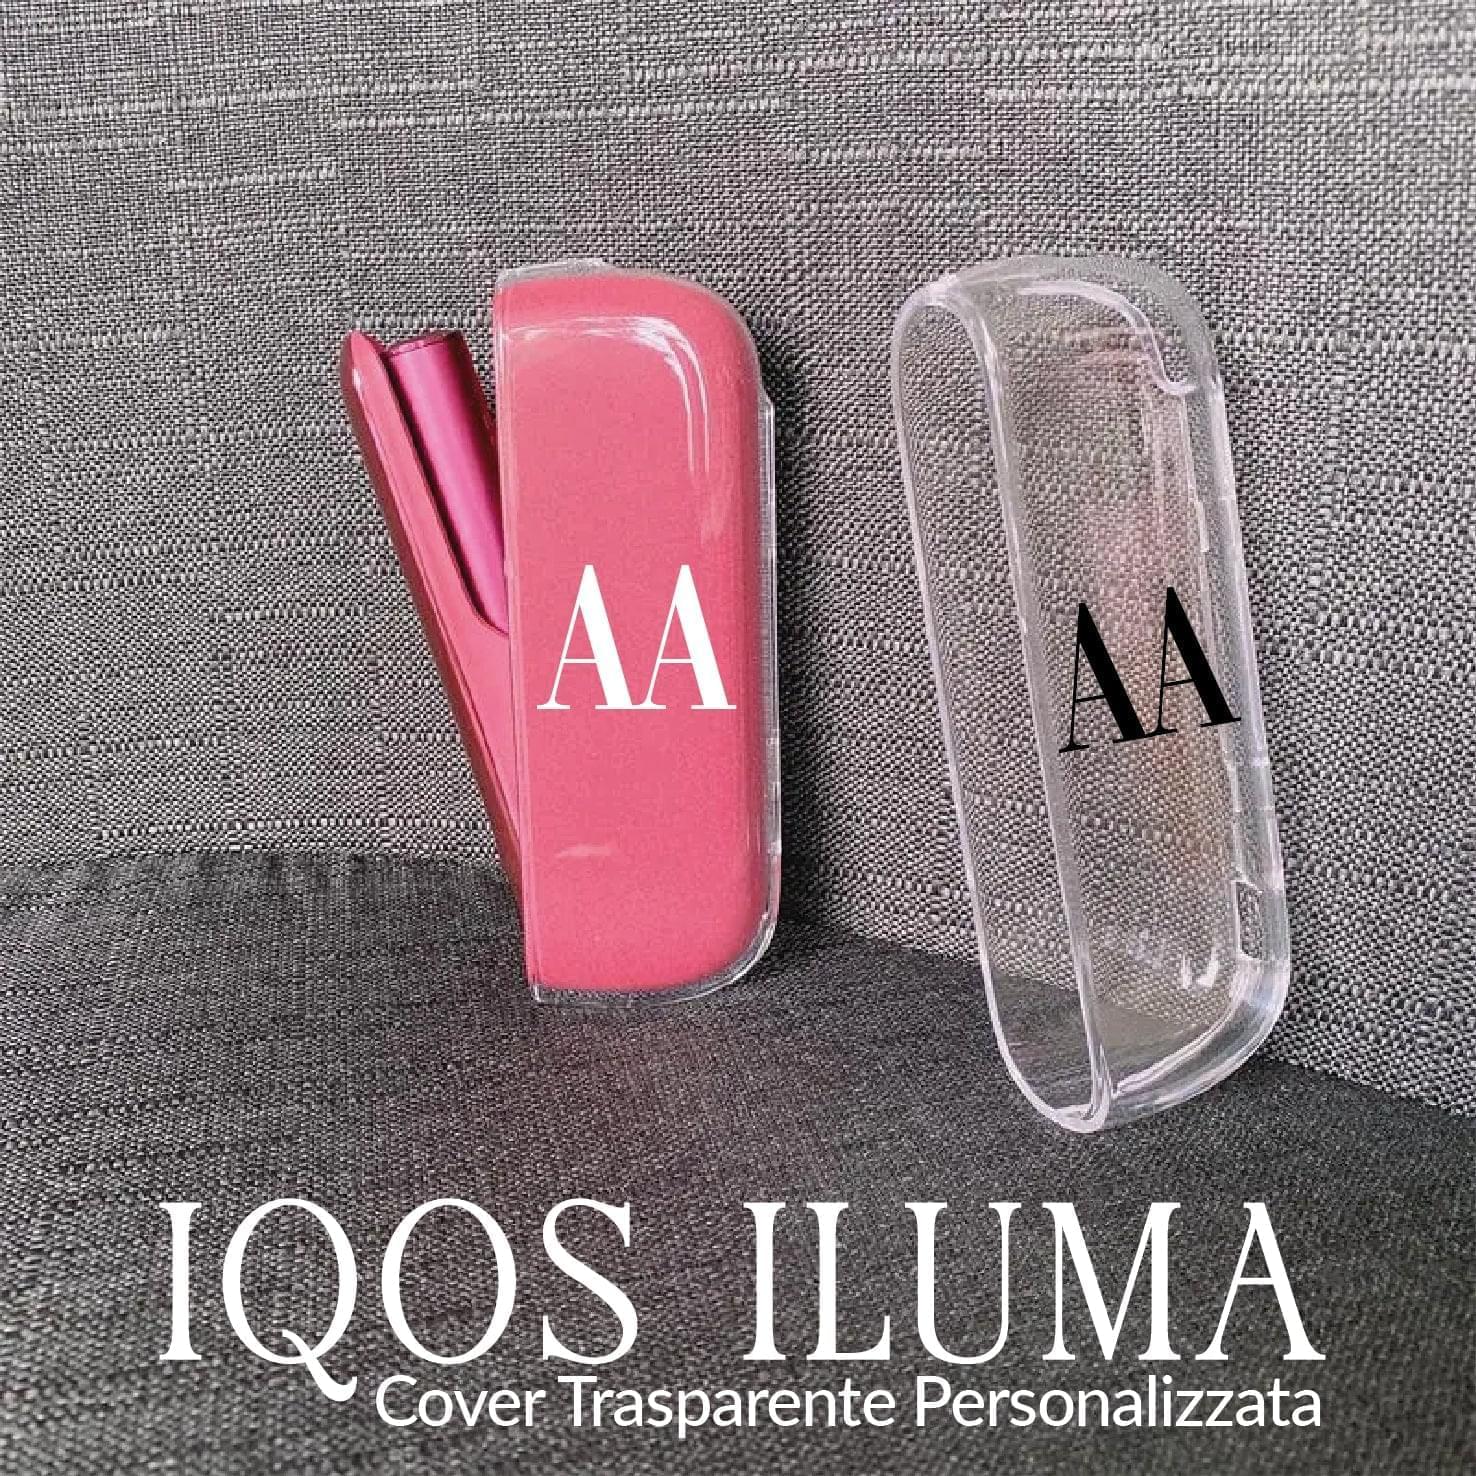 Cover IQOS trasparente - Personalizzata con iniziali! Per IQOS 3 e